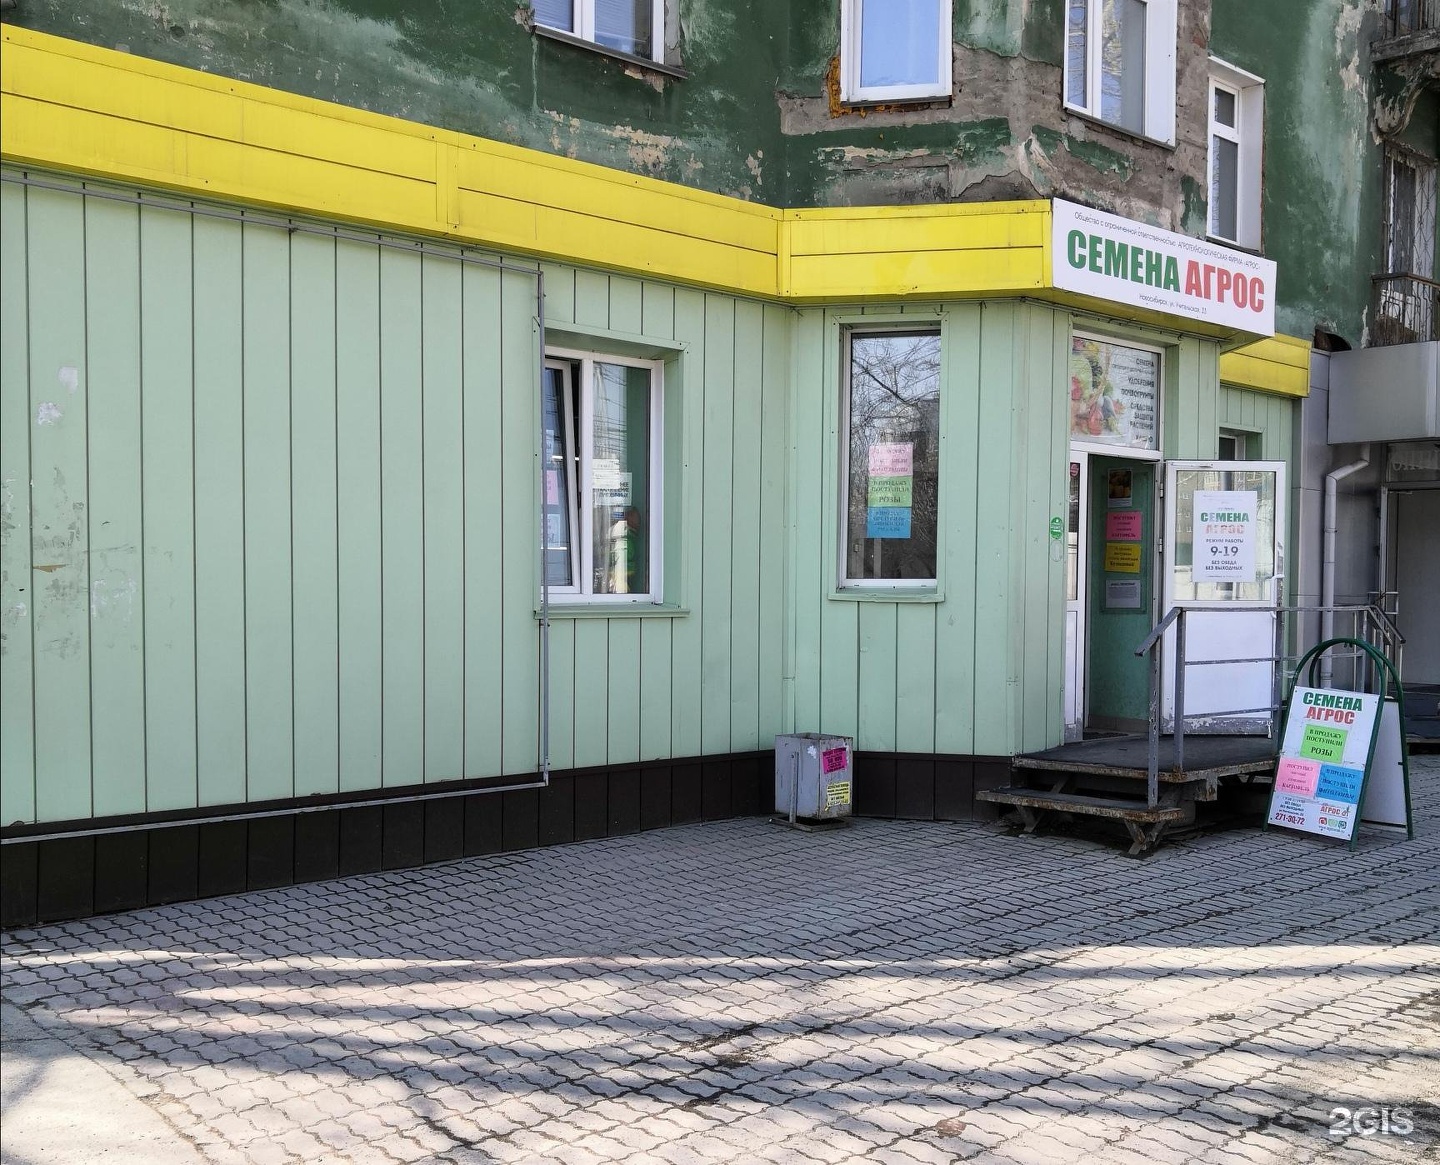 Магазин Агрос в Новосибирске. Семена Агрос Новосибирск. Агрос магазины в Новосибирске адреса. Магазин Агрос в Новокузнецке. Агрос новосибирск сайт